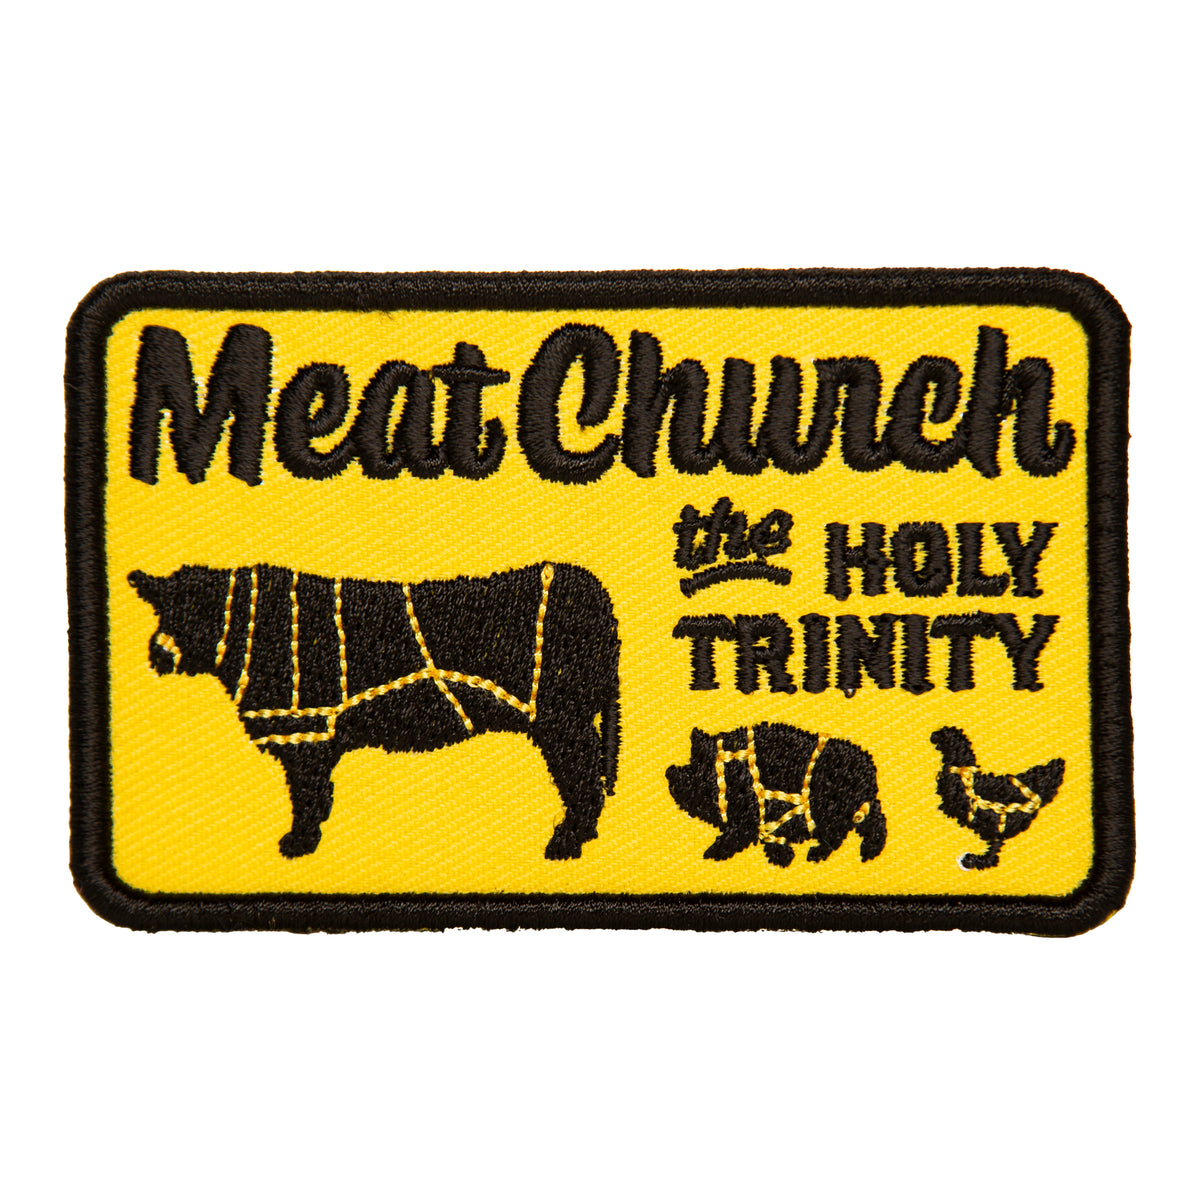 Meat Church Holy Trinity HOT